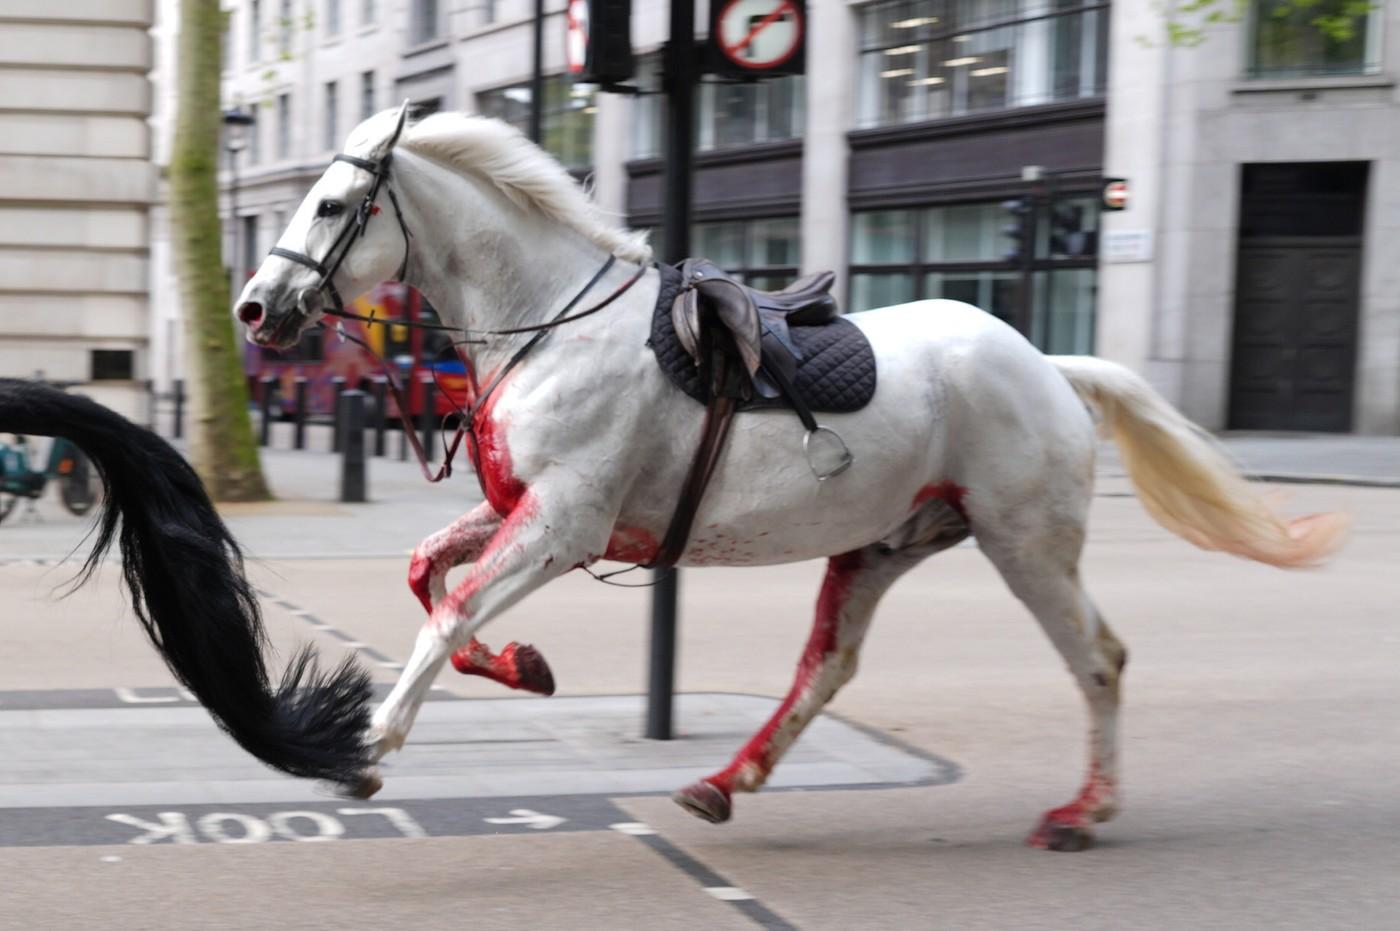 Haos în centrul Londrei. Doi cai aleargă liberi pe străzi, iar unul pare acoperit de sânge